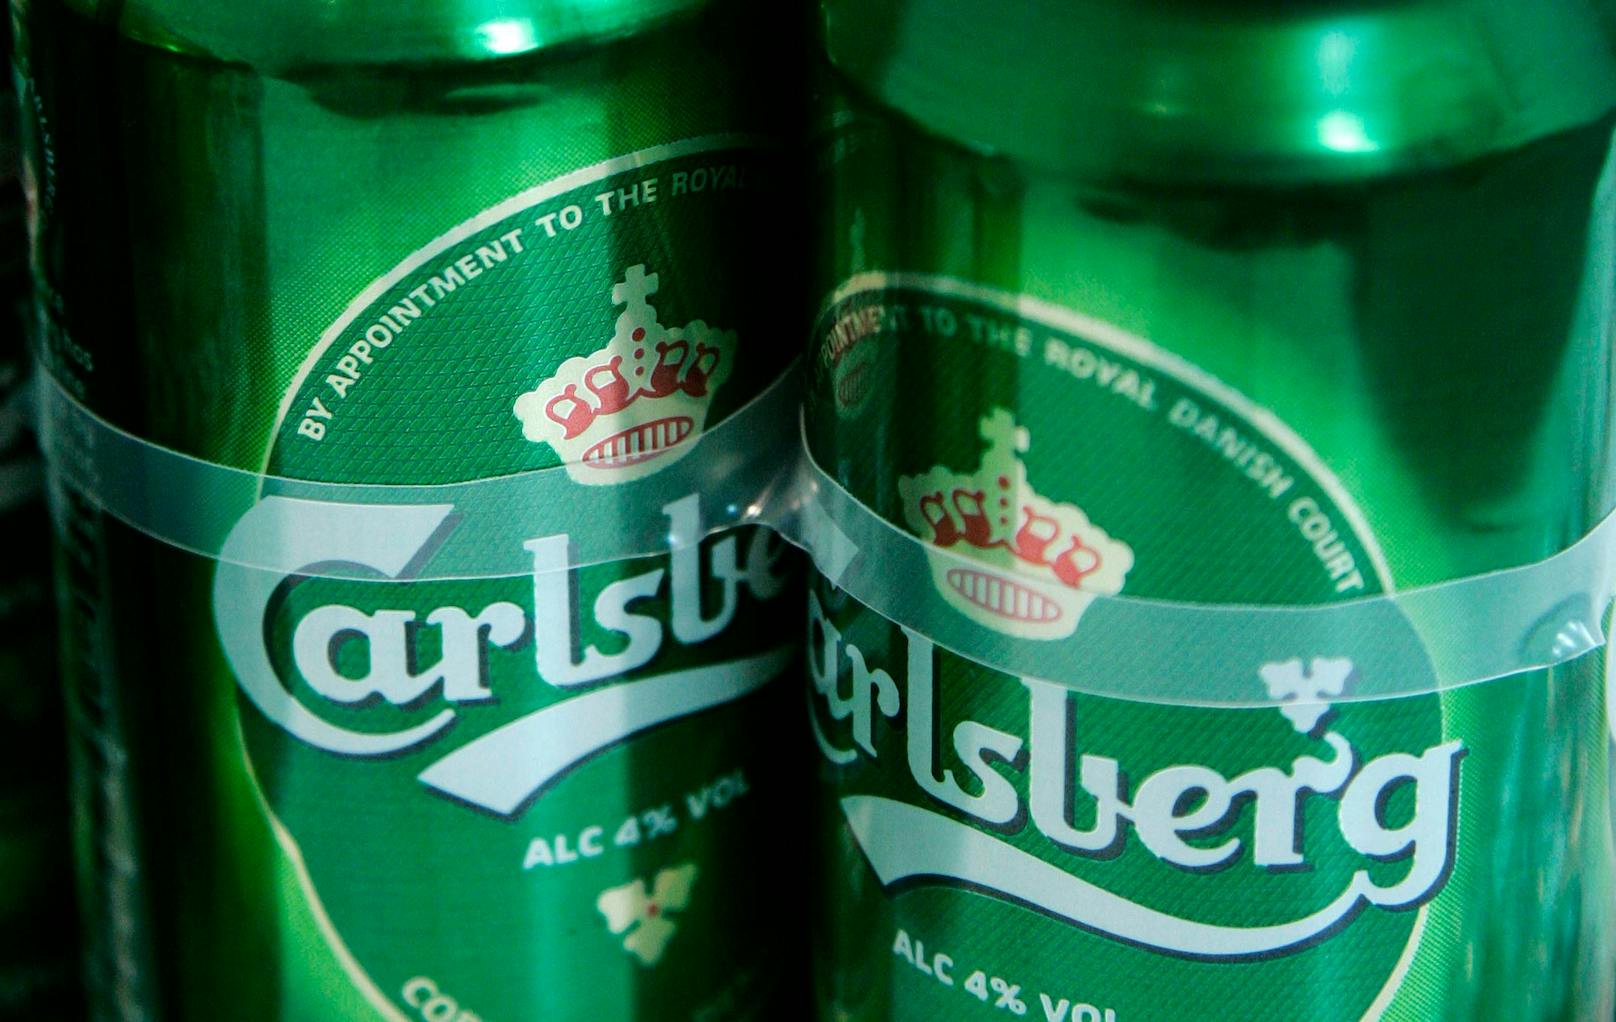 Carlsberg & Heineken – Bier-Patent wird angefochten